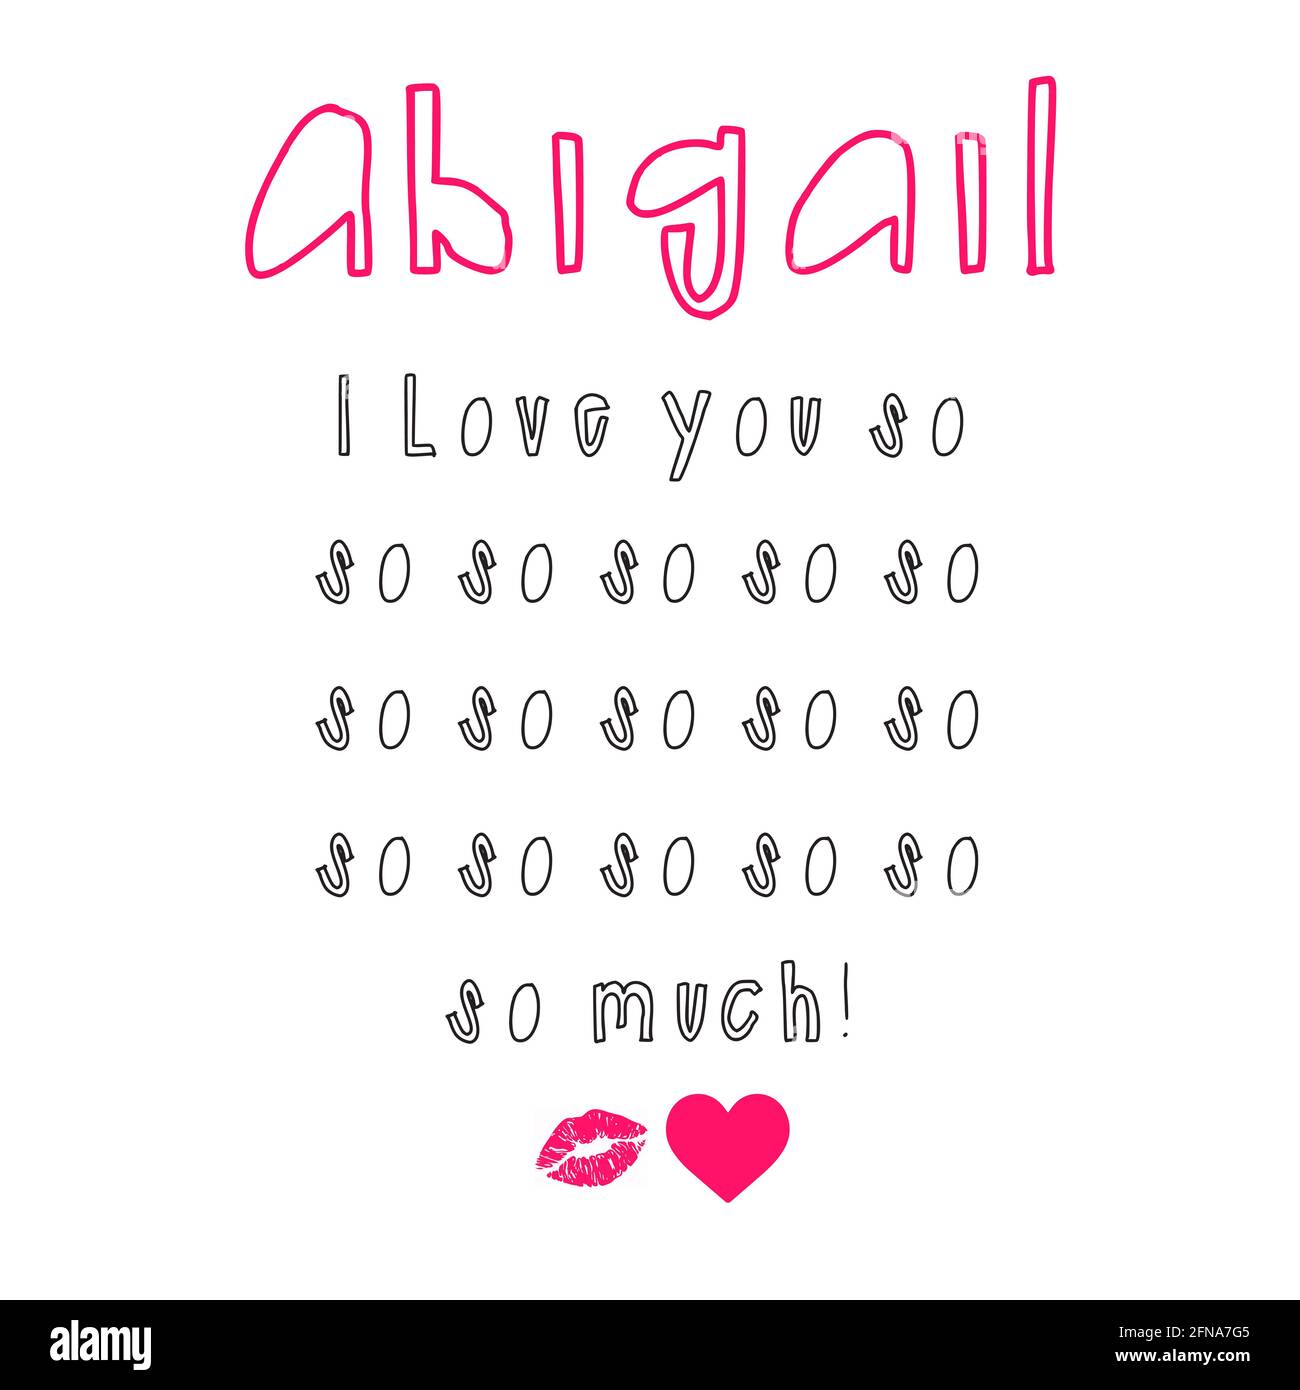 Abigail bambina immagini e fotografie stock ad alta risoluzione - Alamy